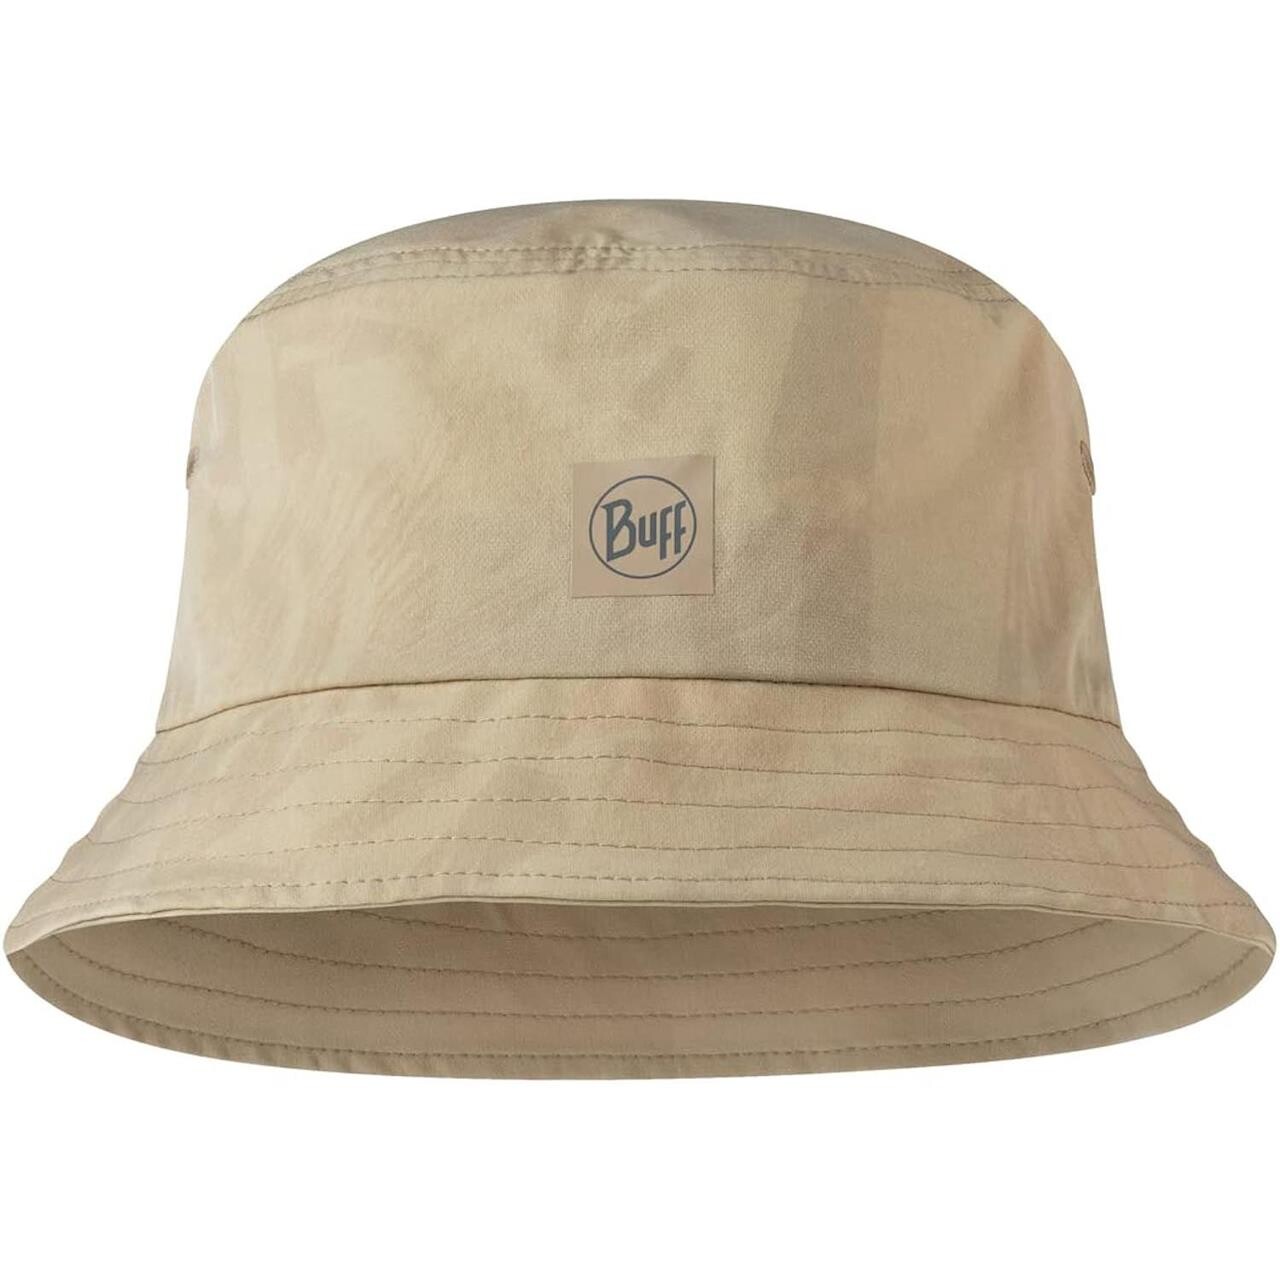 Billede af Buff Adventure Bucket Hat (Beige (ACAI SAND) Large/x-large)